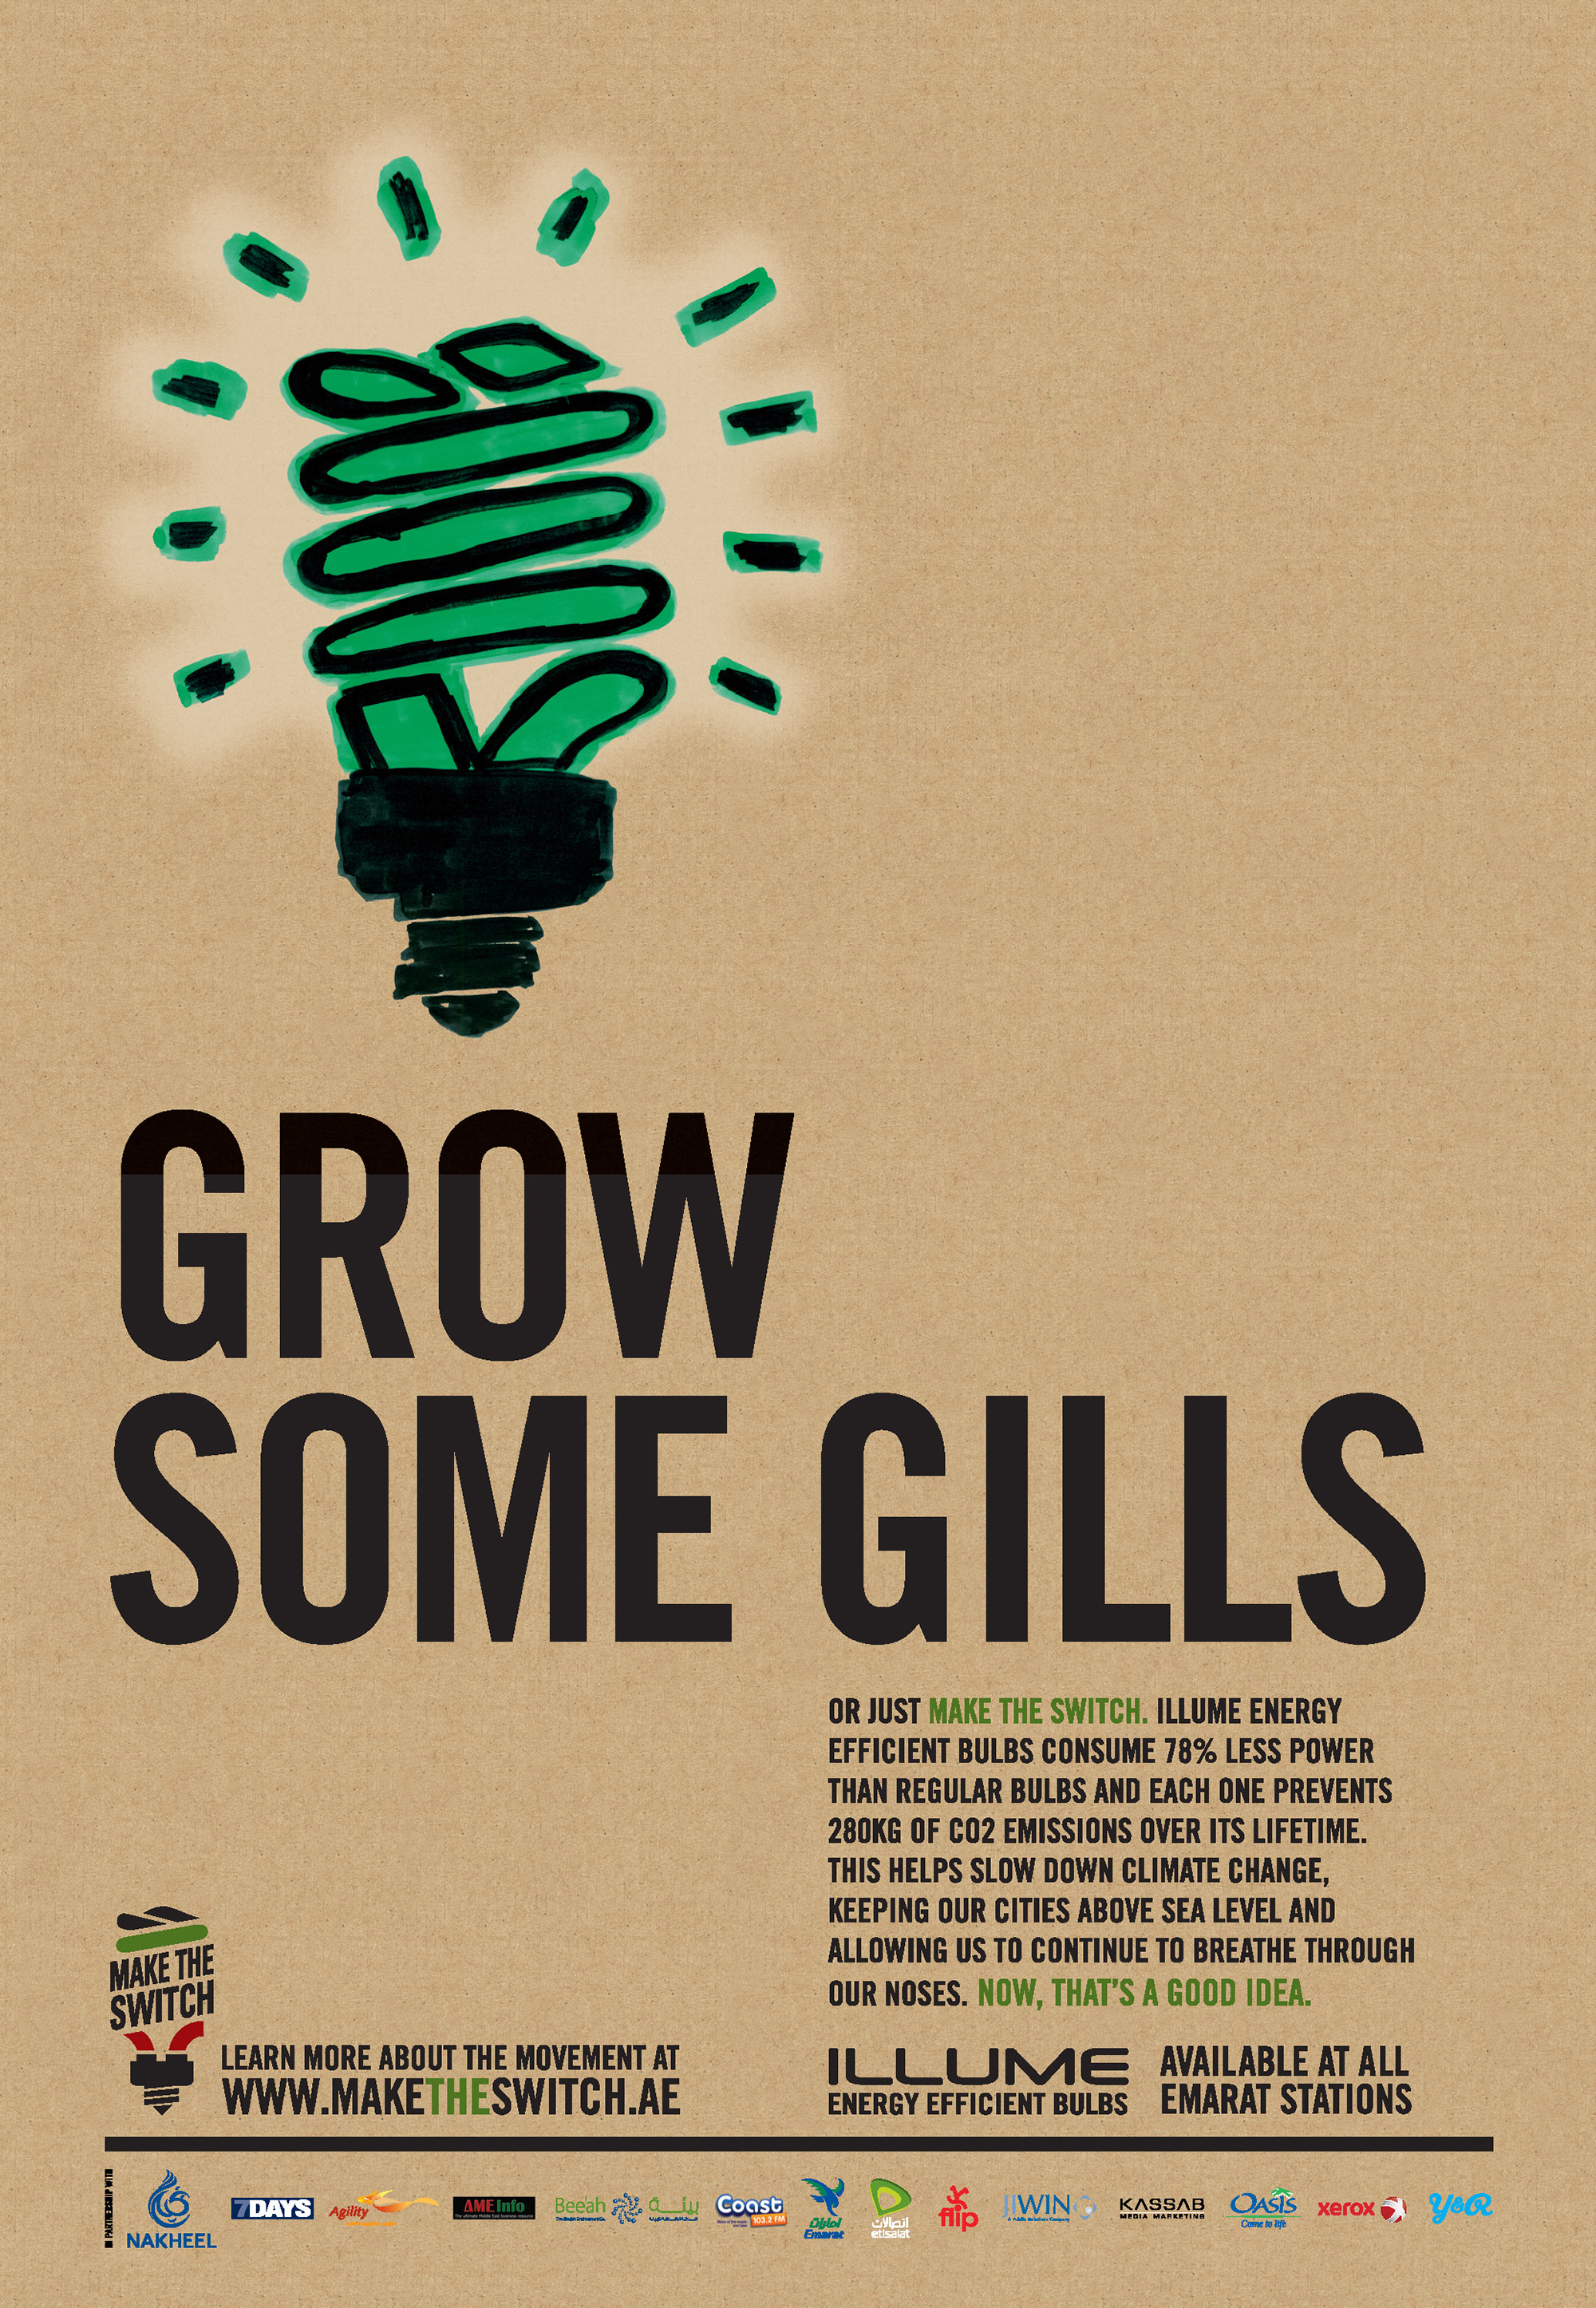 Grow some gills.